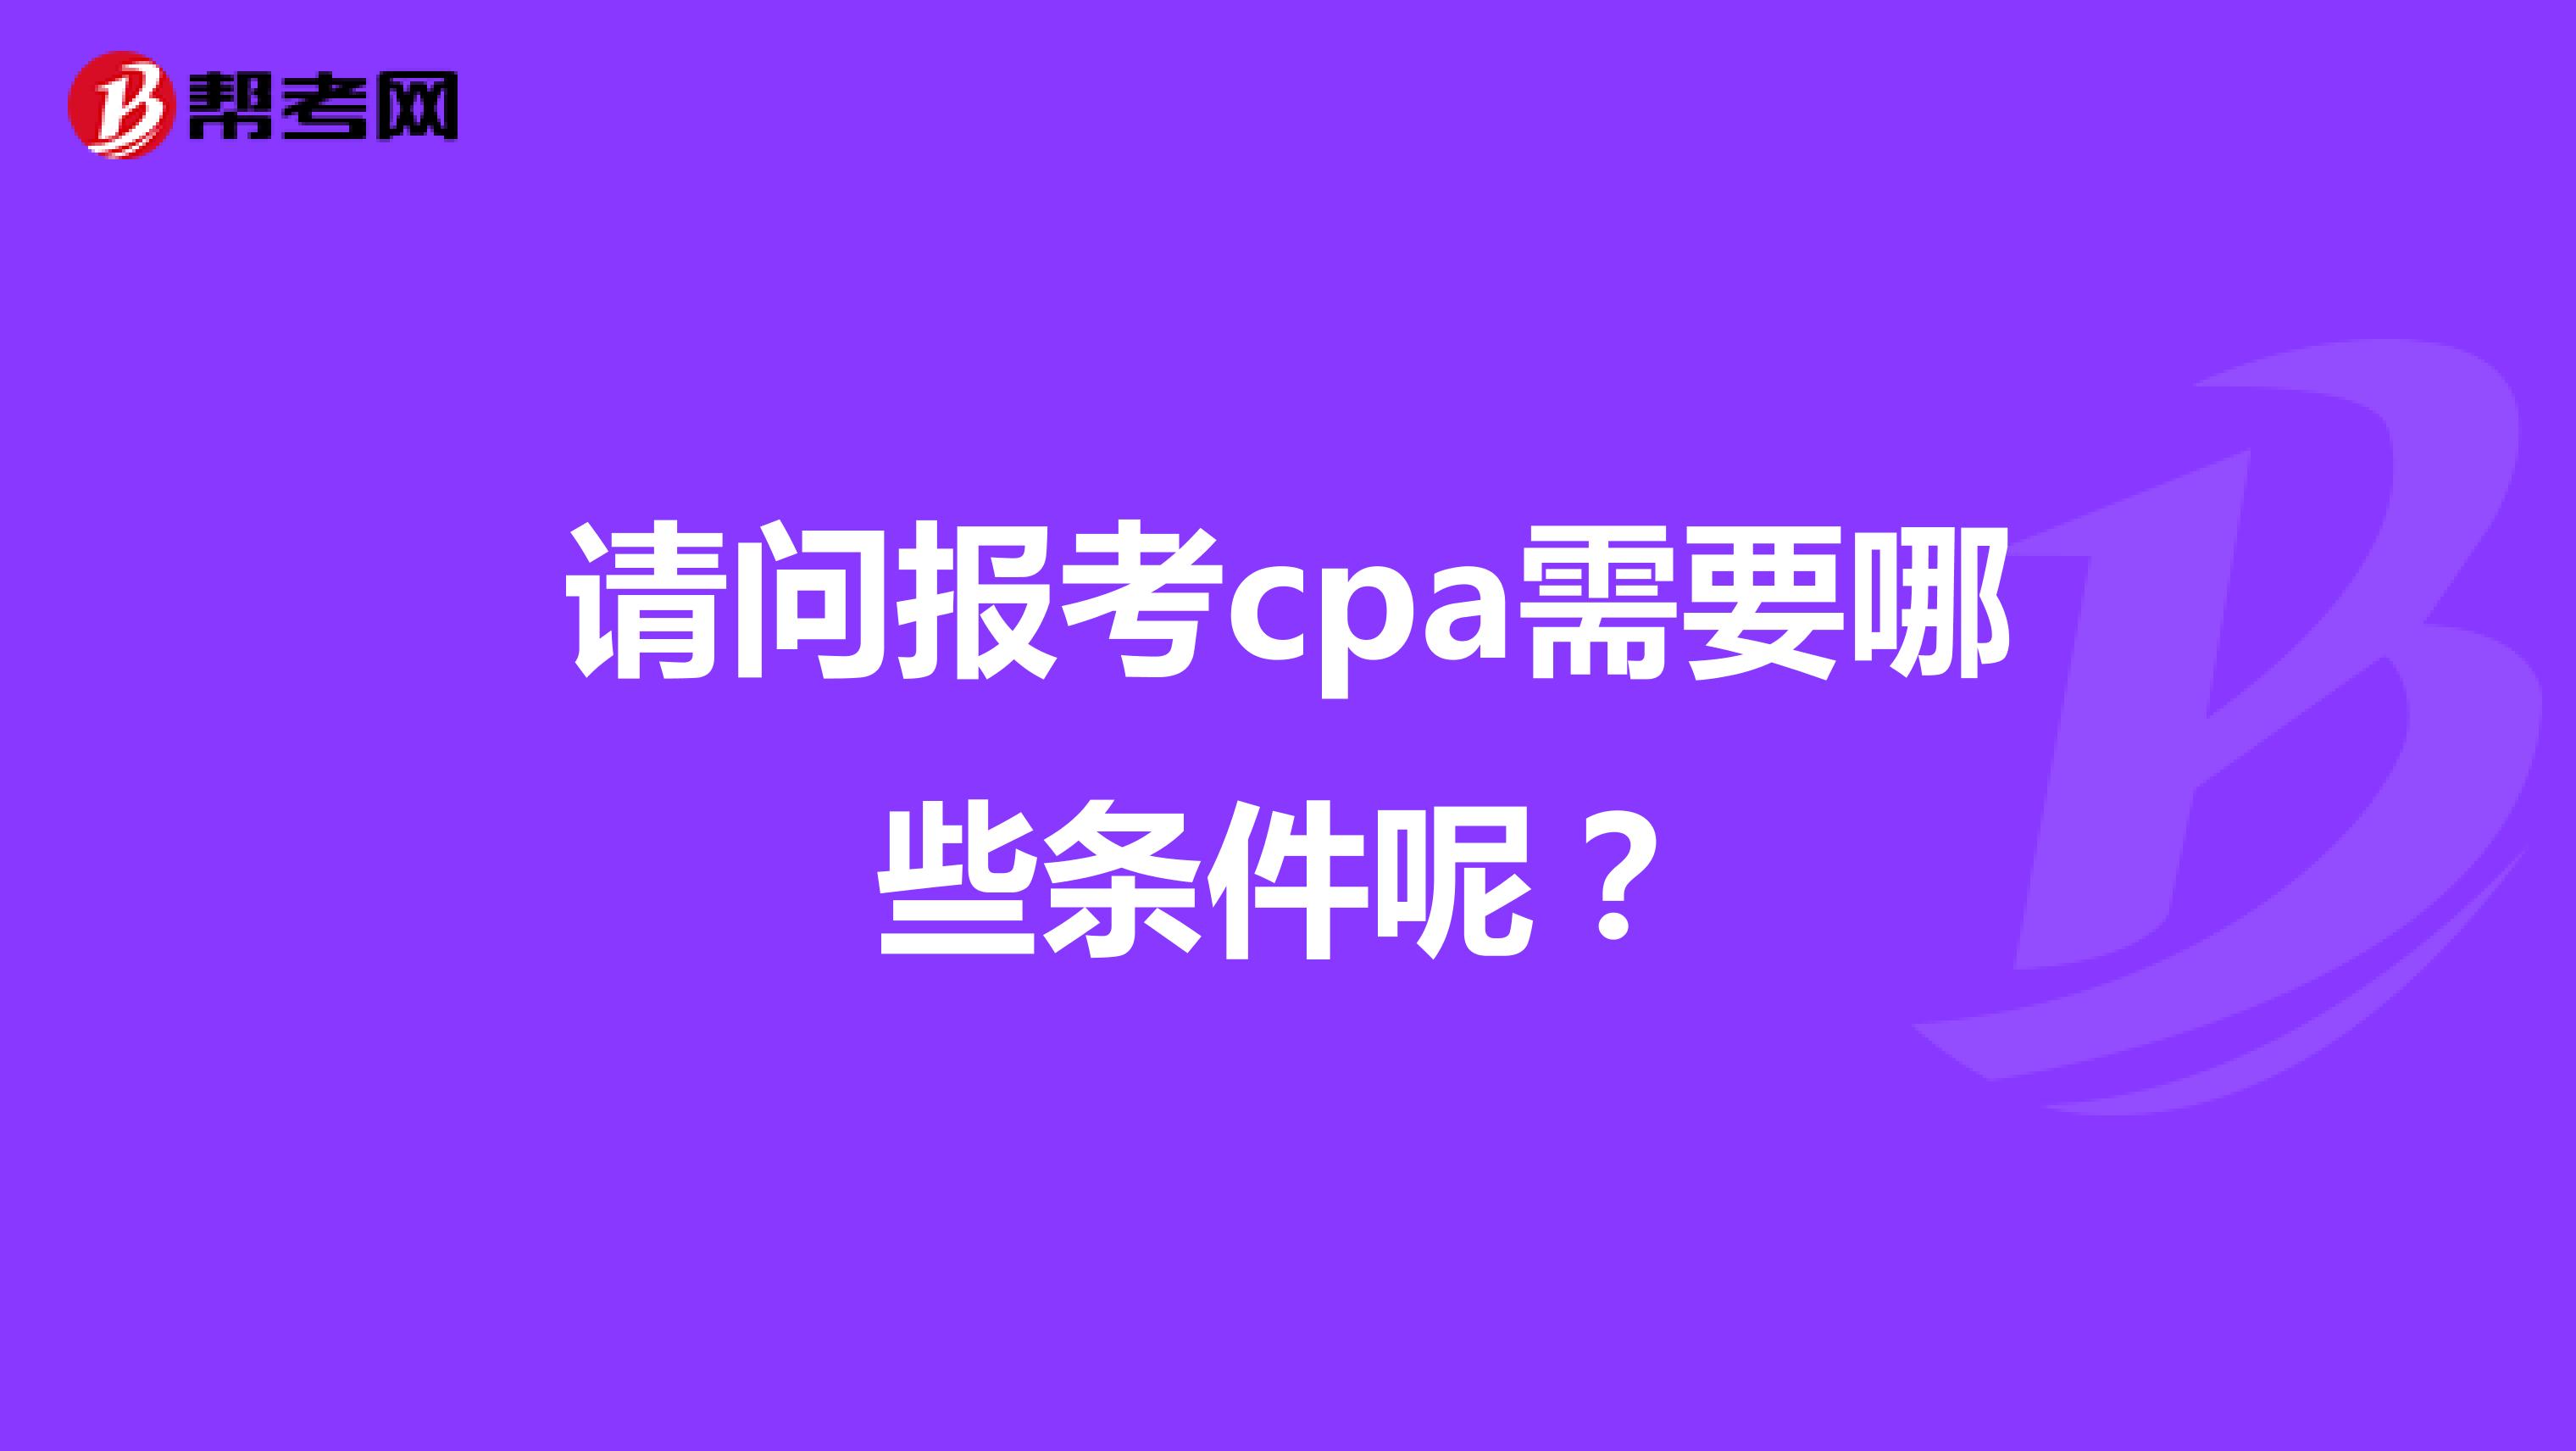 请问报考cpa需要哪些条件呢？